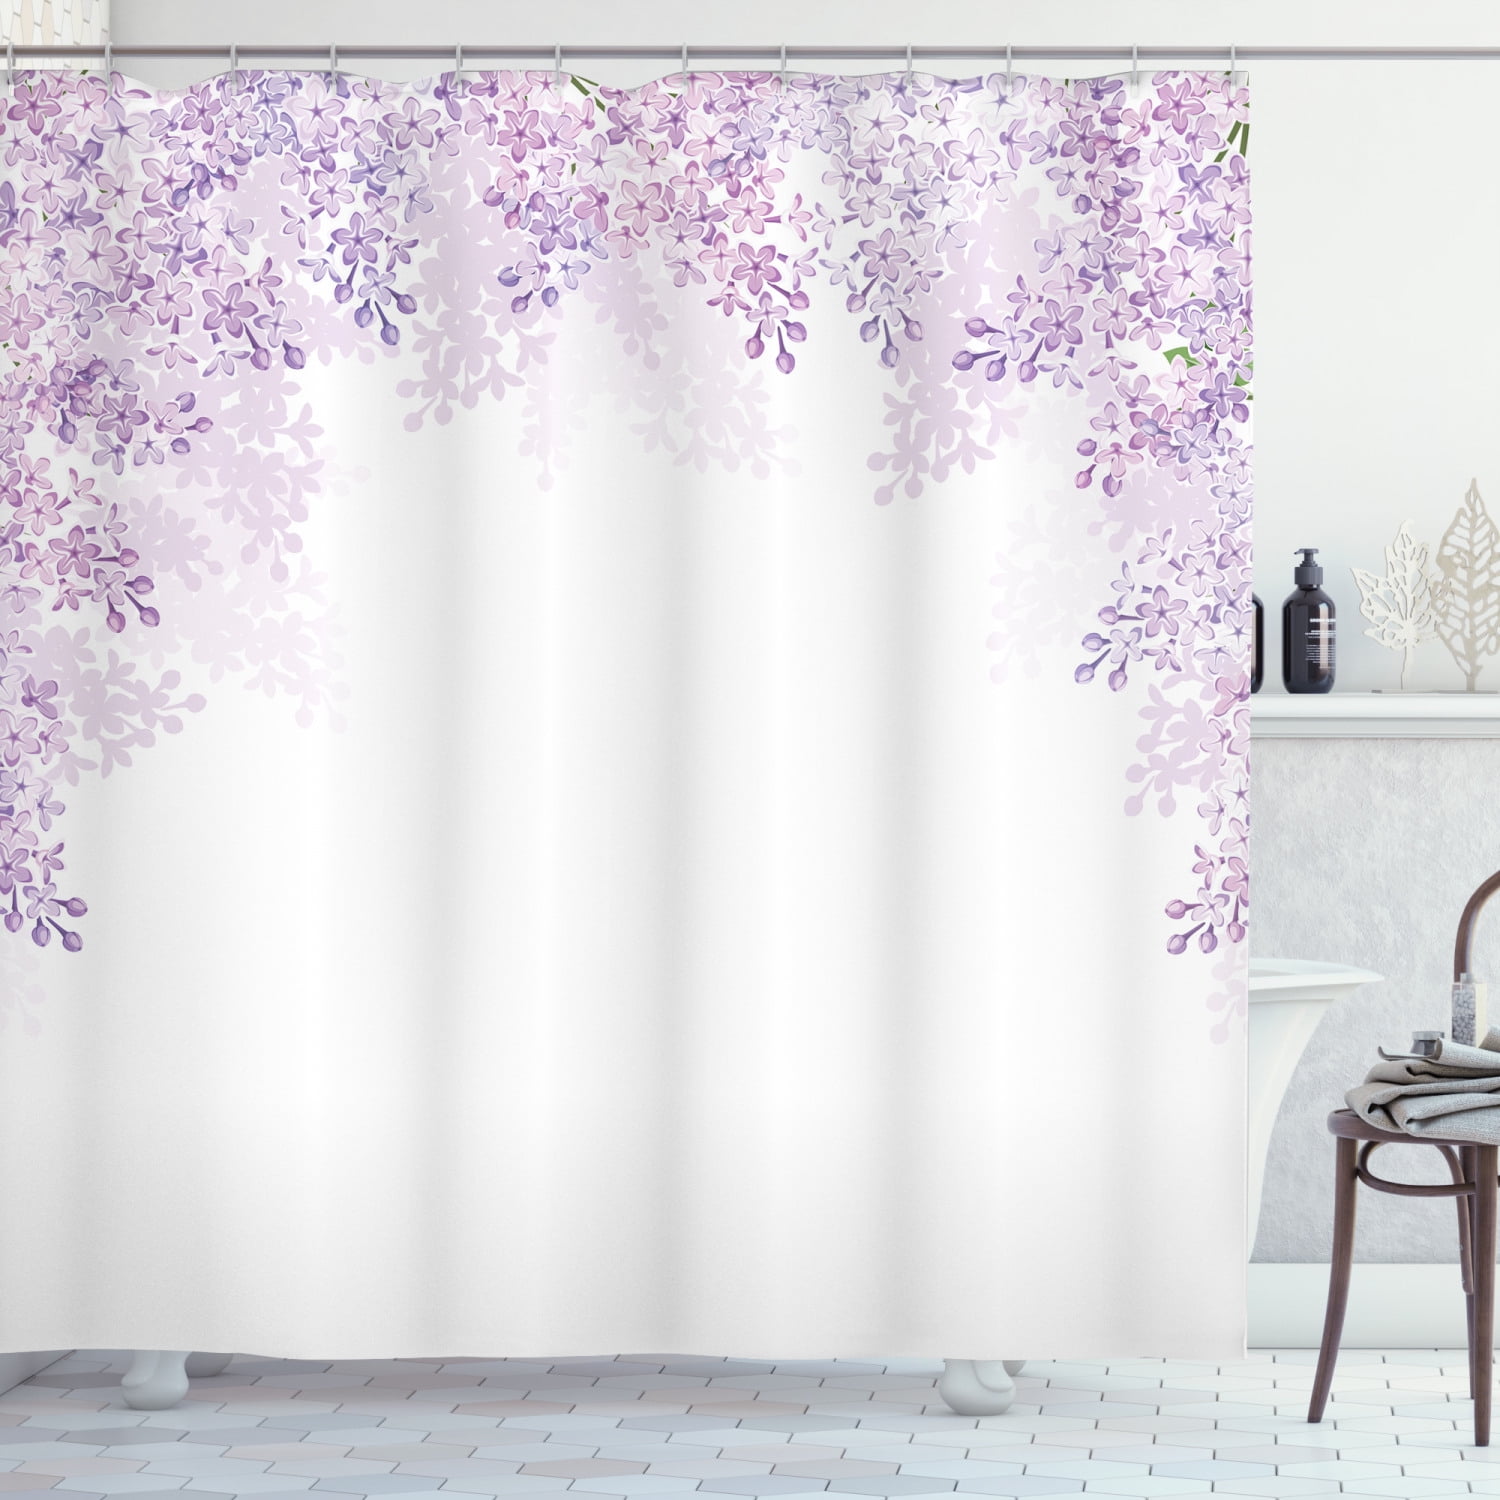 Details about   Watercolor Purple Bloom Flowers Violet Fabric Shower Curtain Set Bathroom Decor 